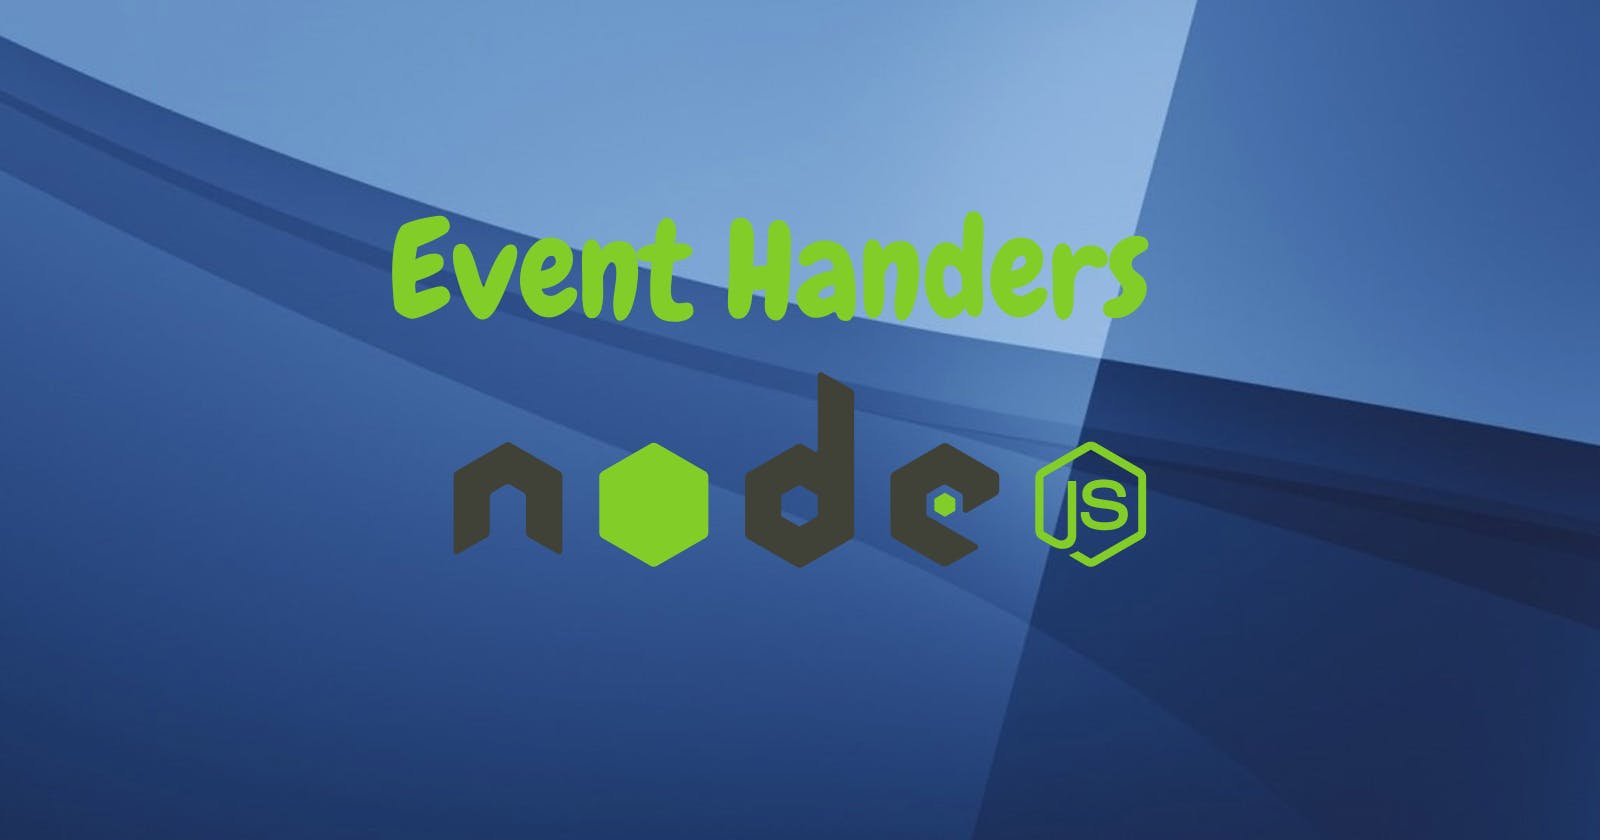 Event Handler in NodeJs